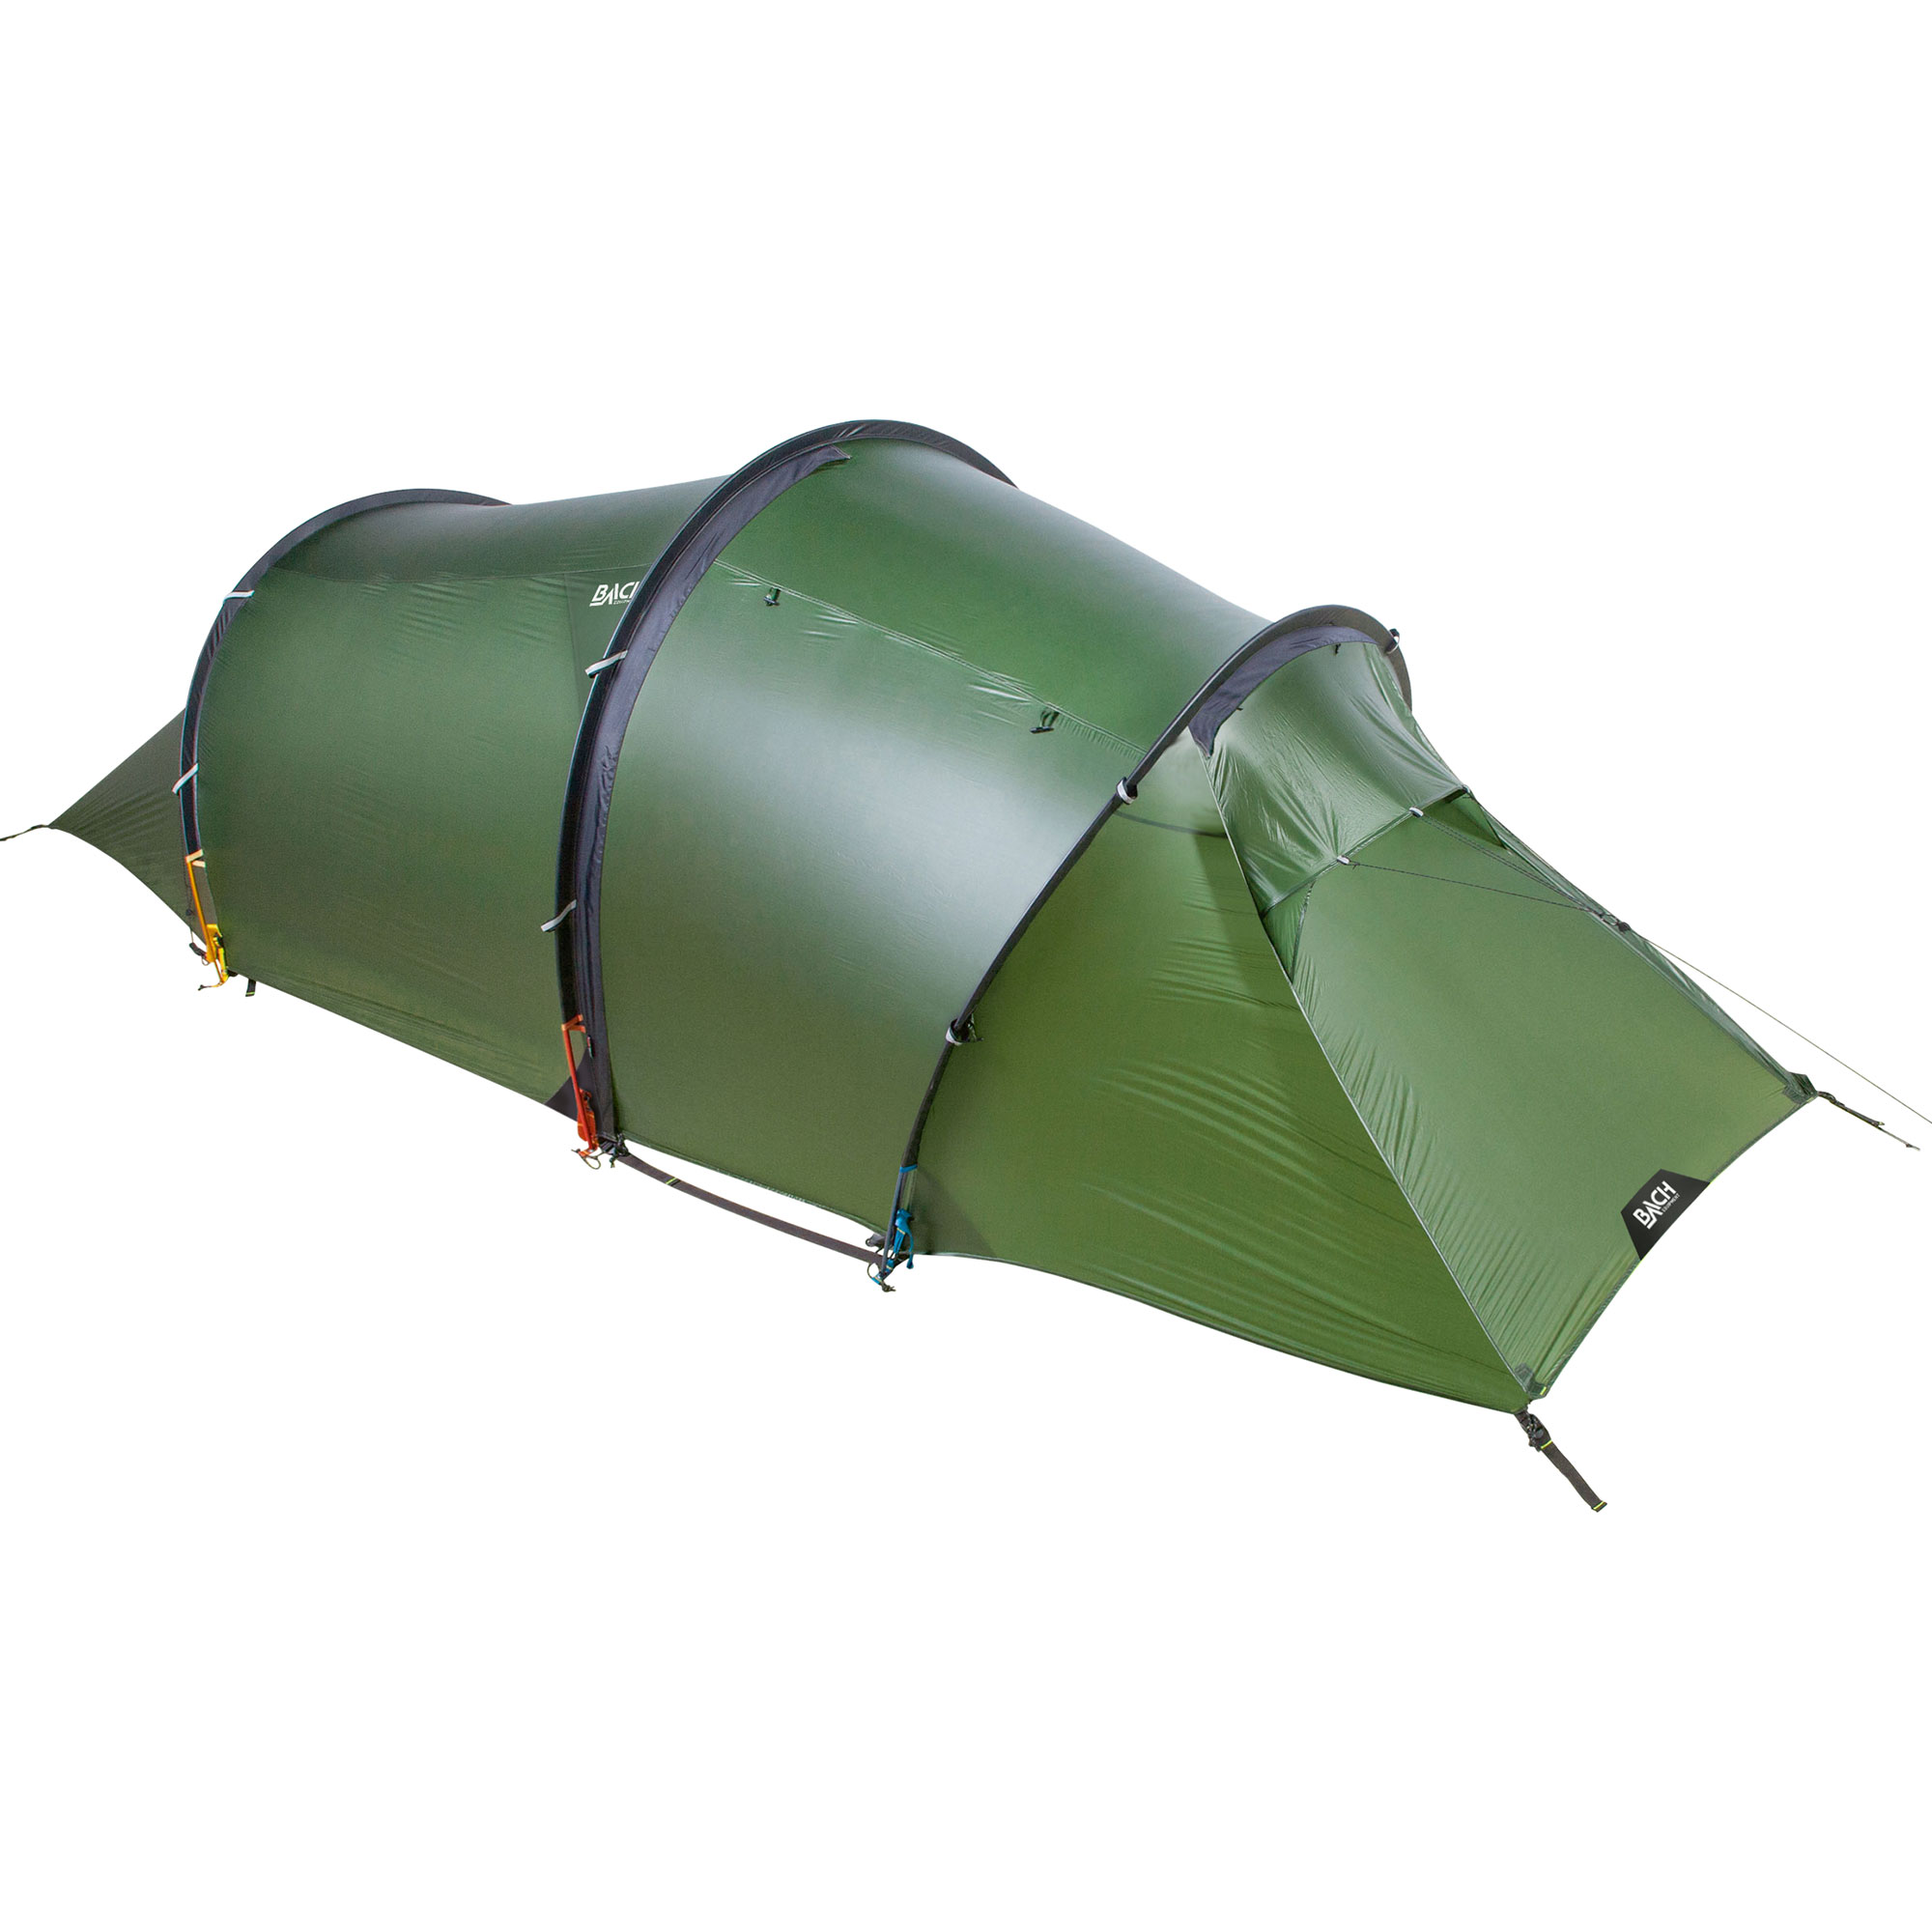 Apteryx Willow Green Tent | Tenten | Outdoor Gouda